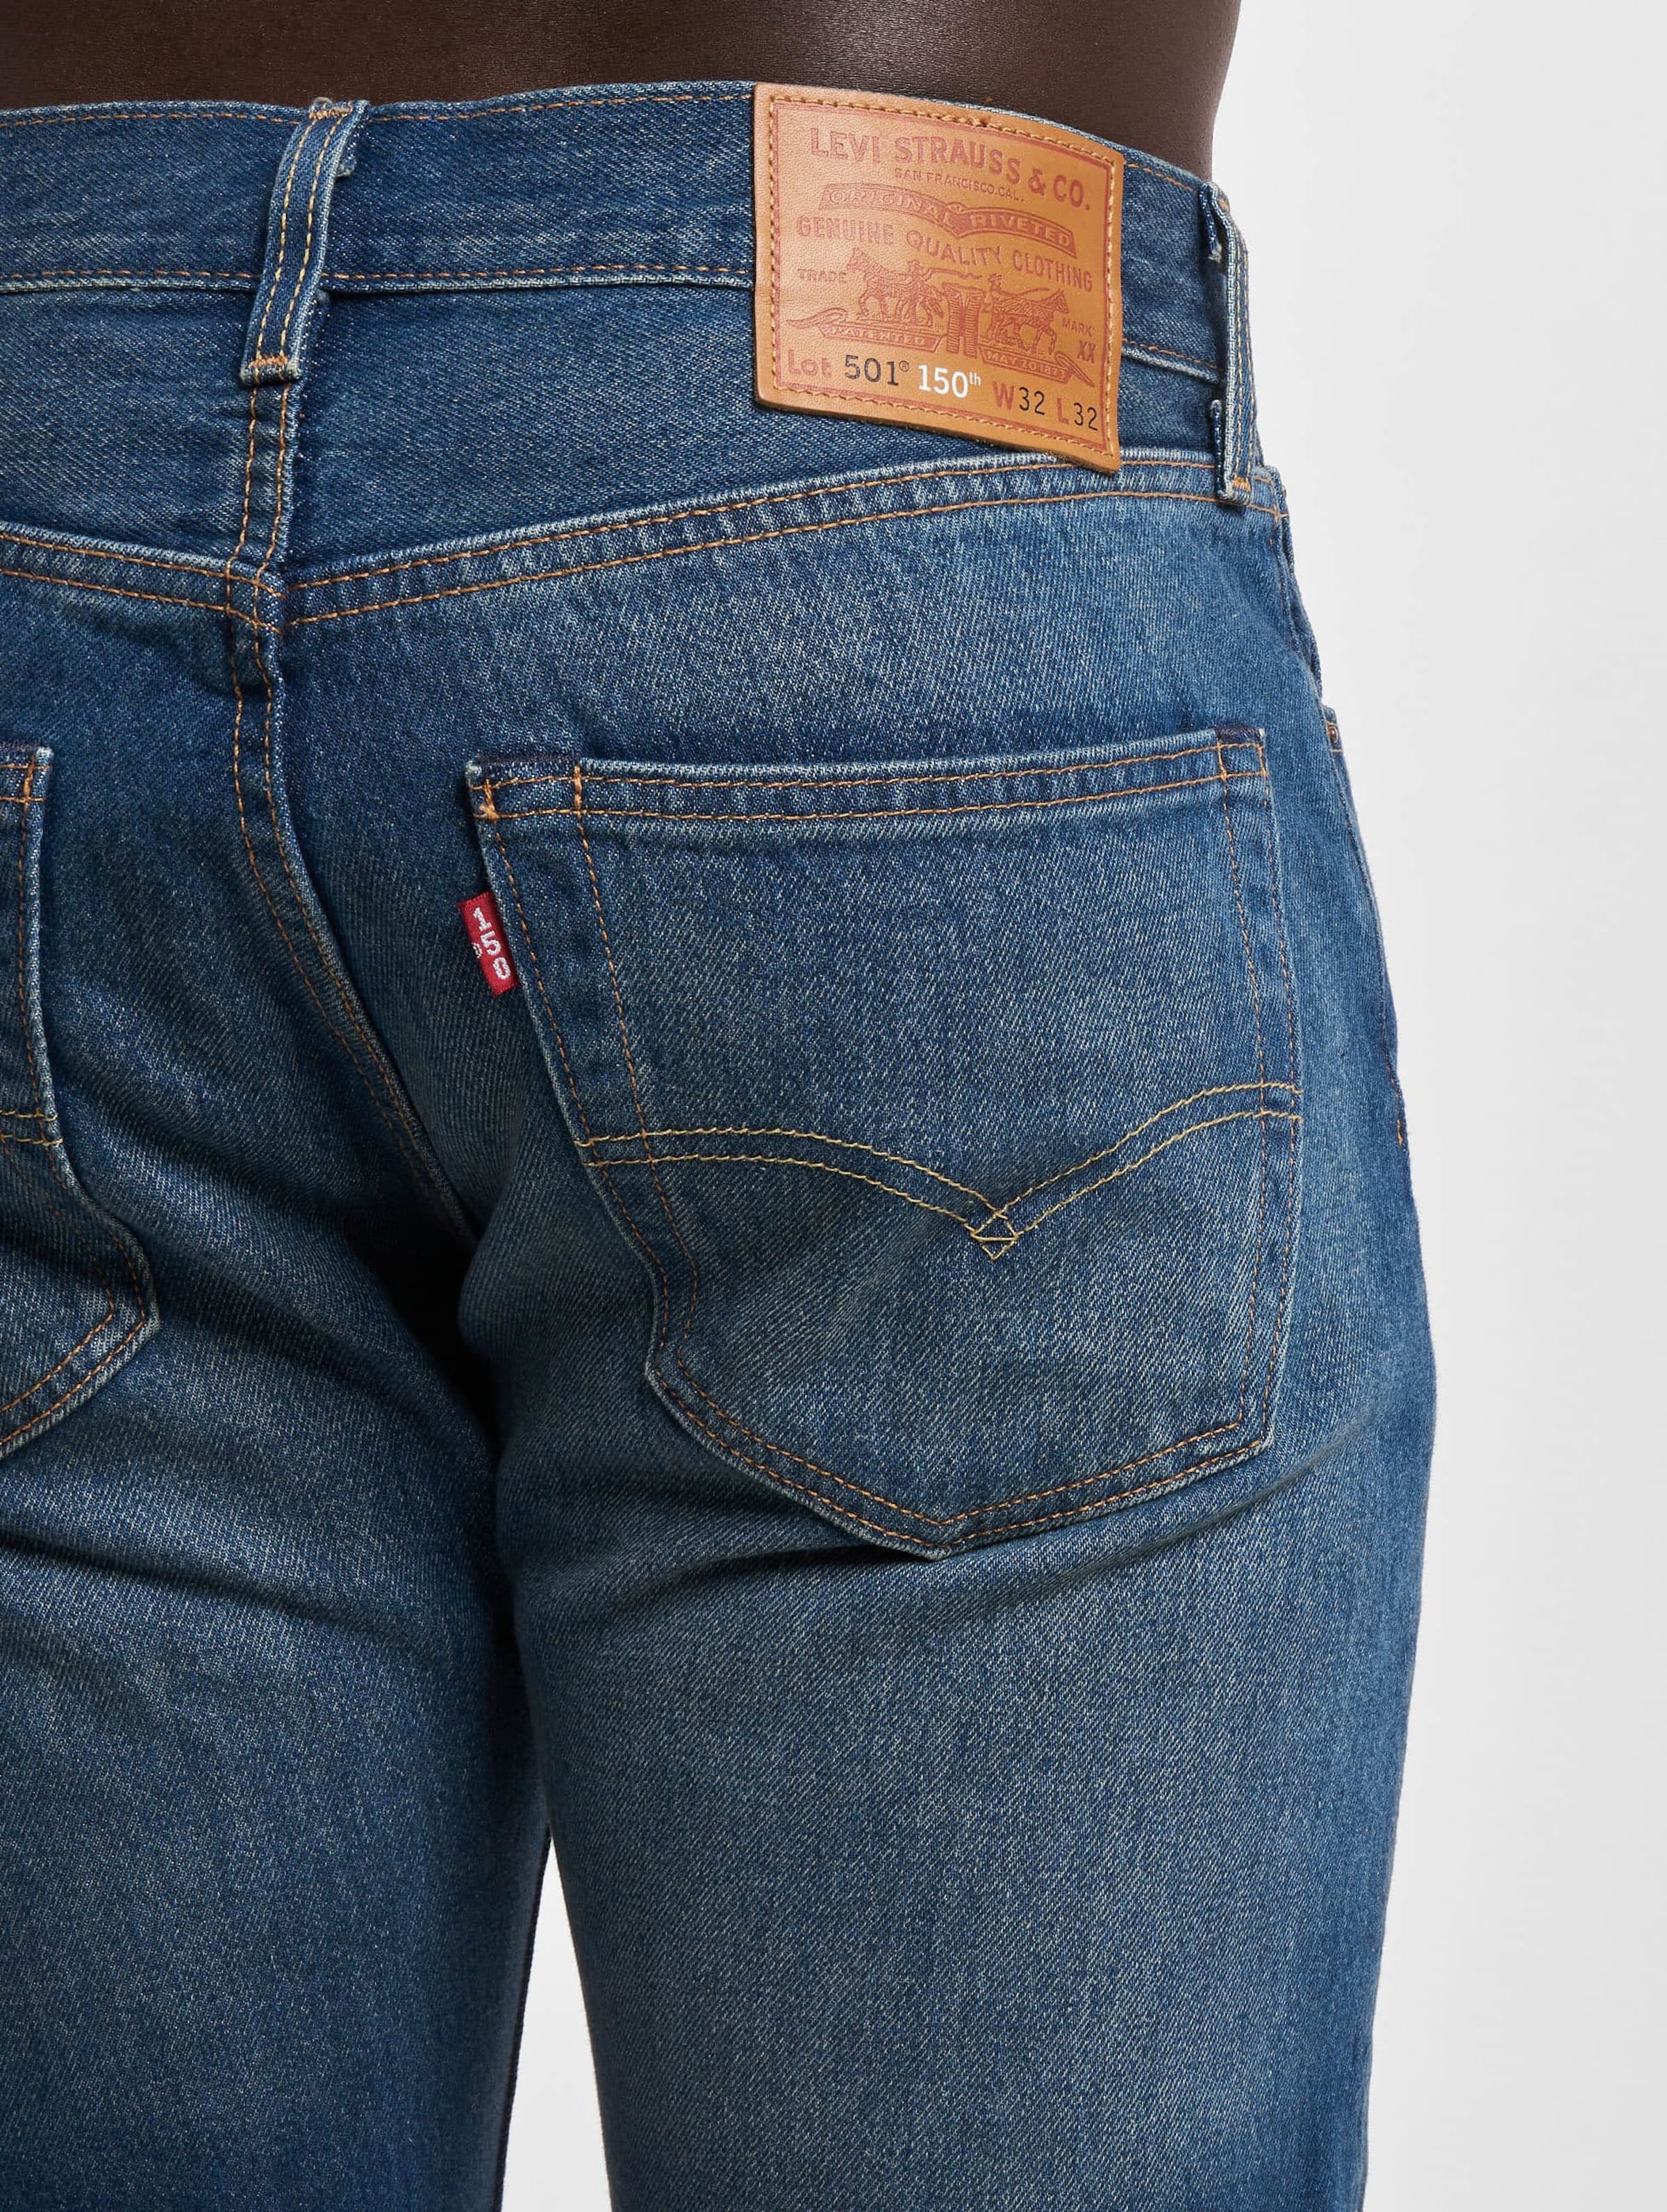 Levis 501 Original Fit Jeans | DEFSHOP | 74484